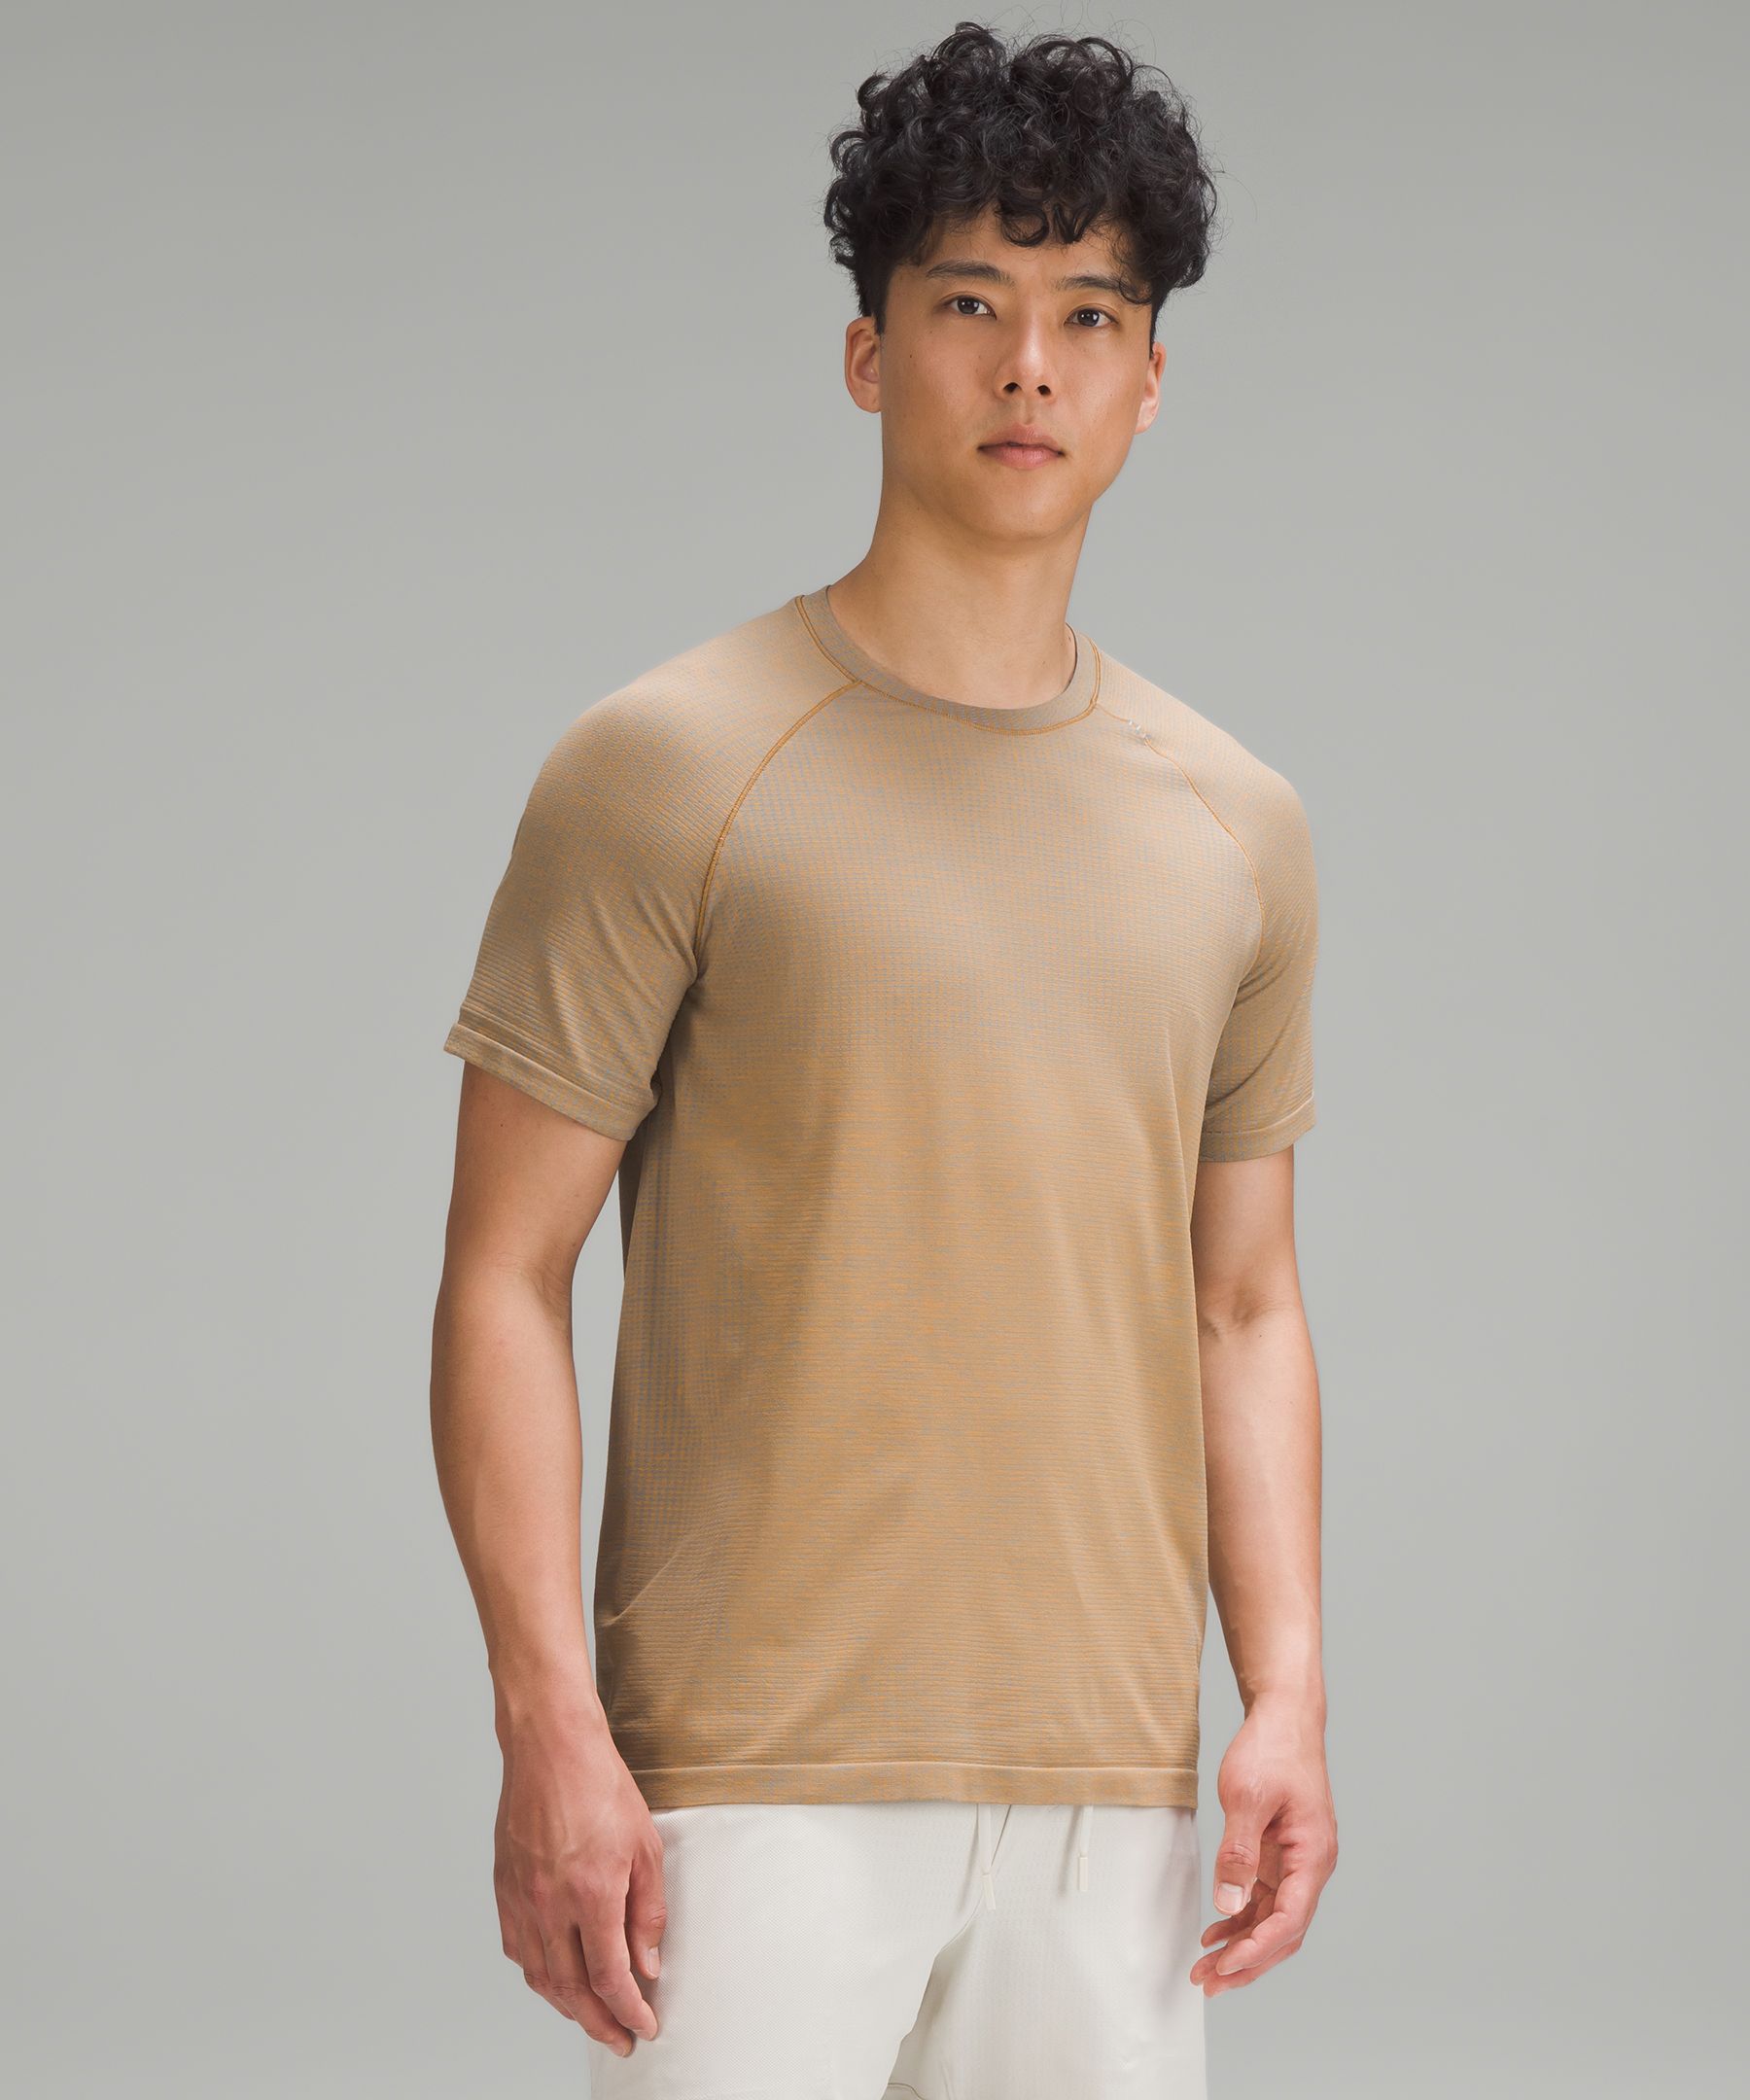 Lululemon Metal Vent Tech Short-sleeve Shirt